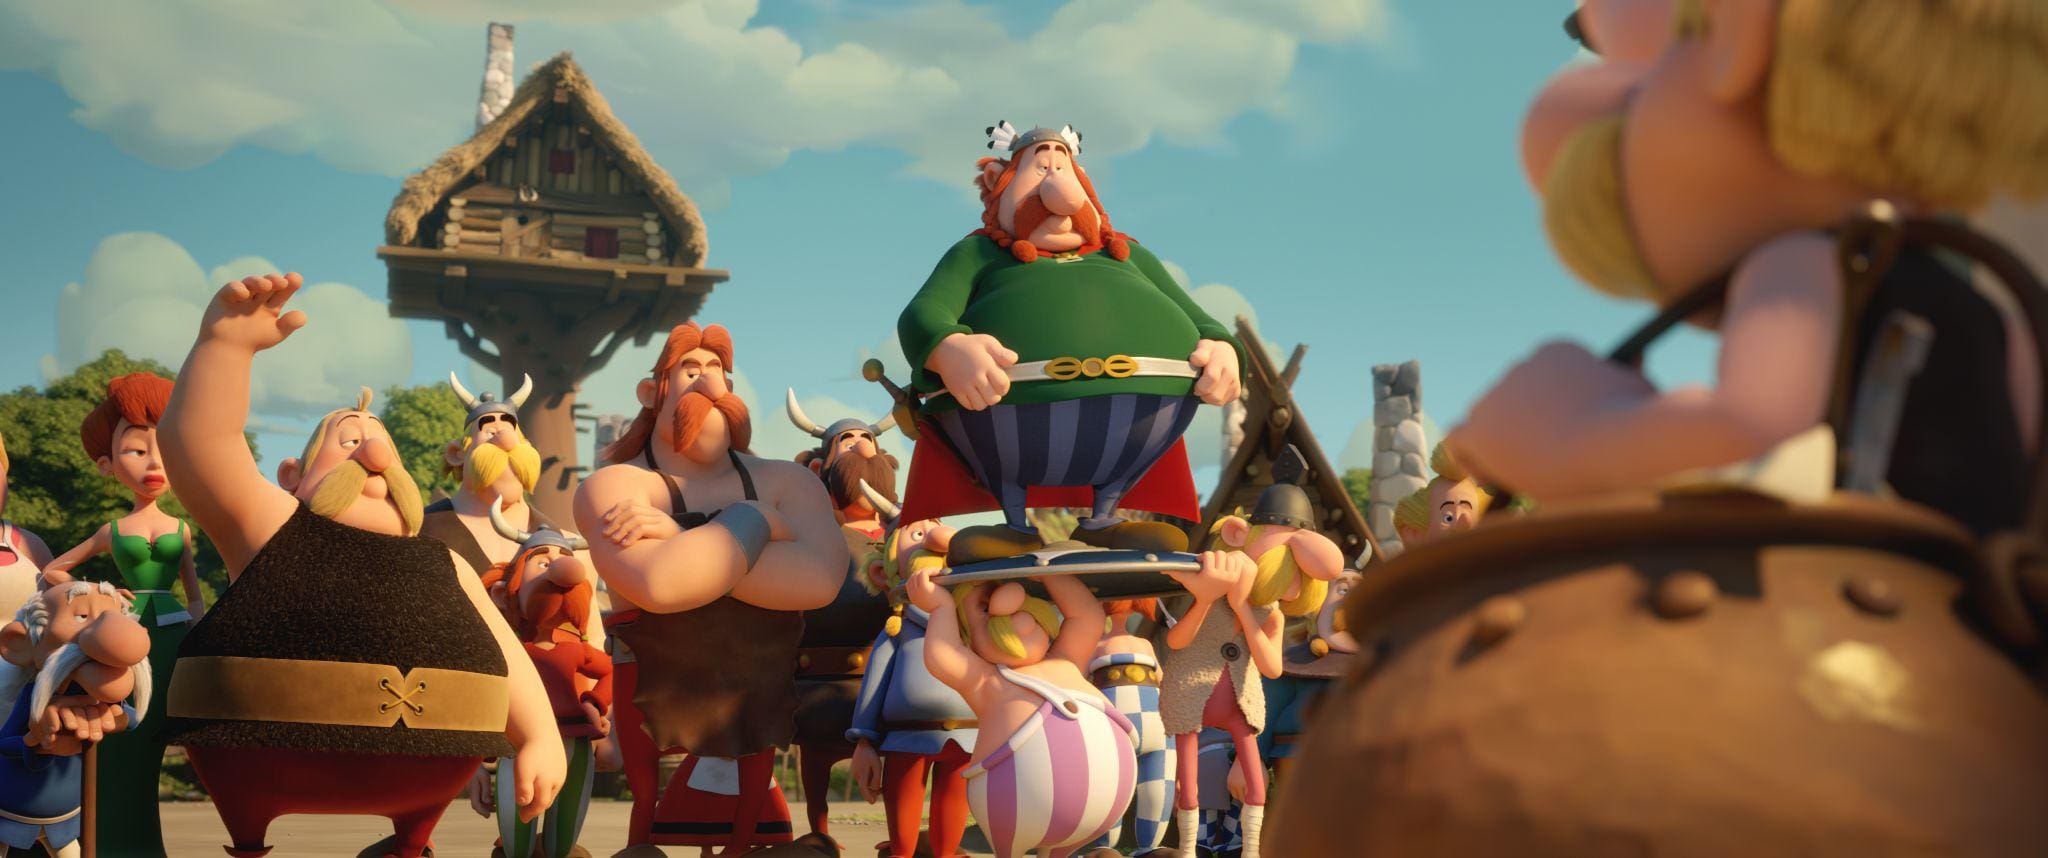 Asterix und das Geheimnis des Zaubertranks Szenenbilder 01.72dpi - KINOFILME AB 14.03.2019